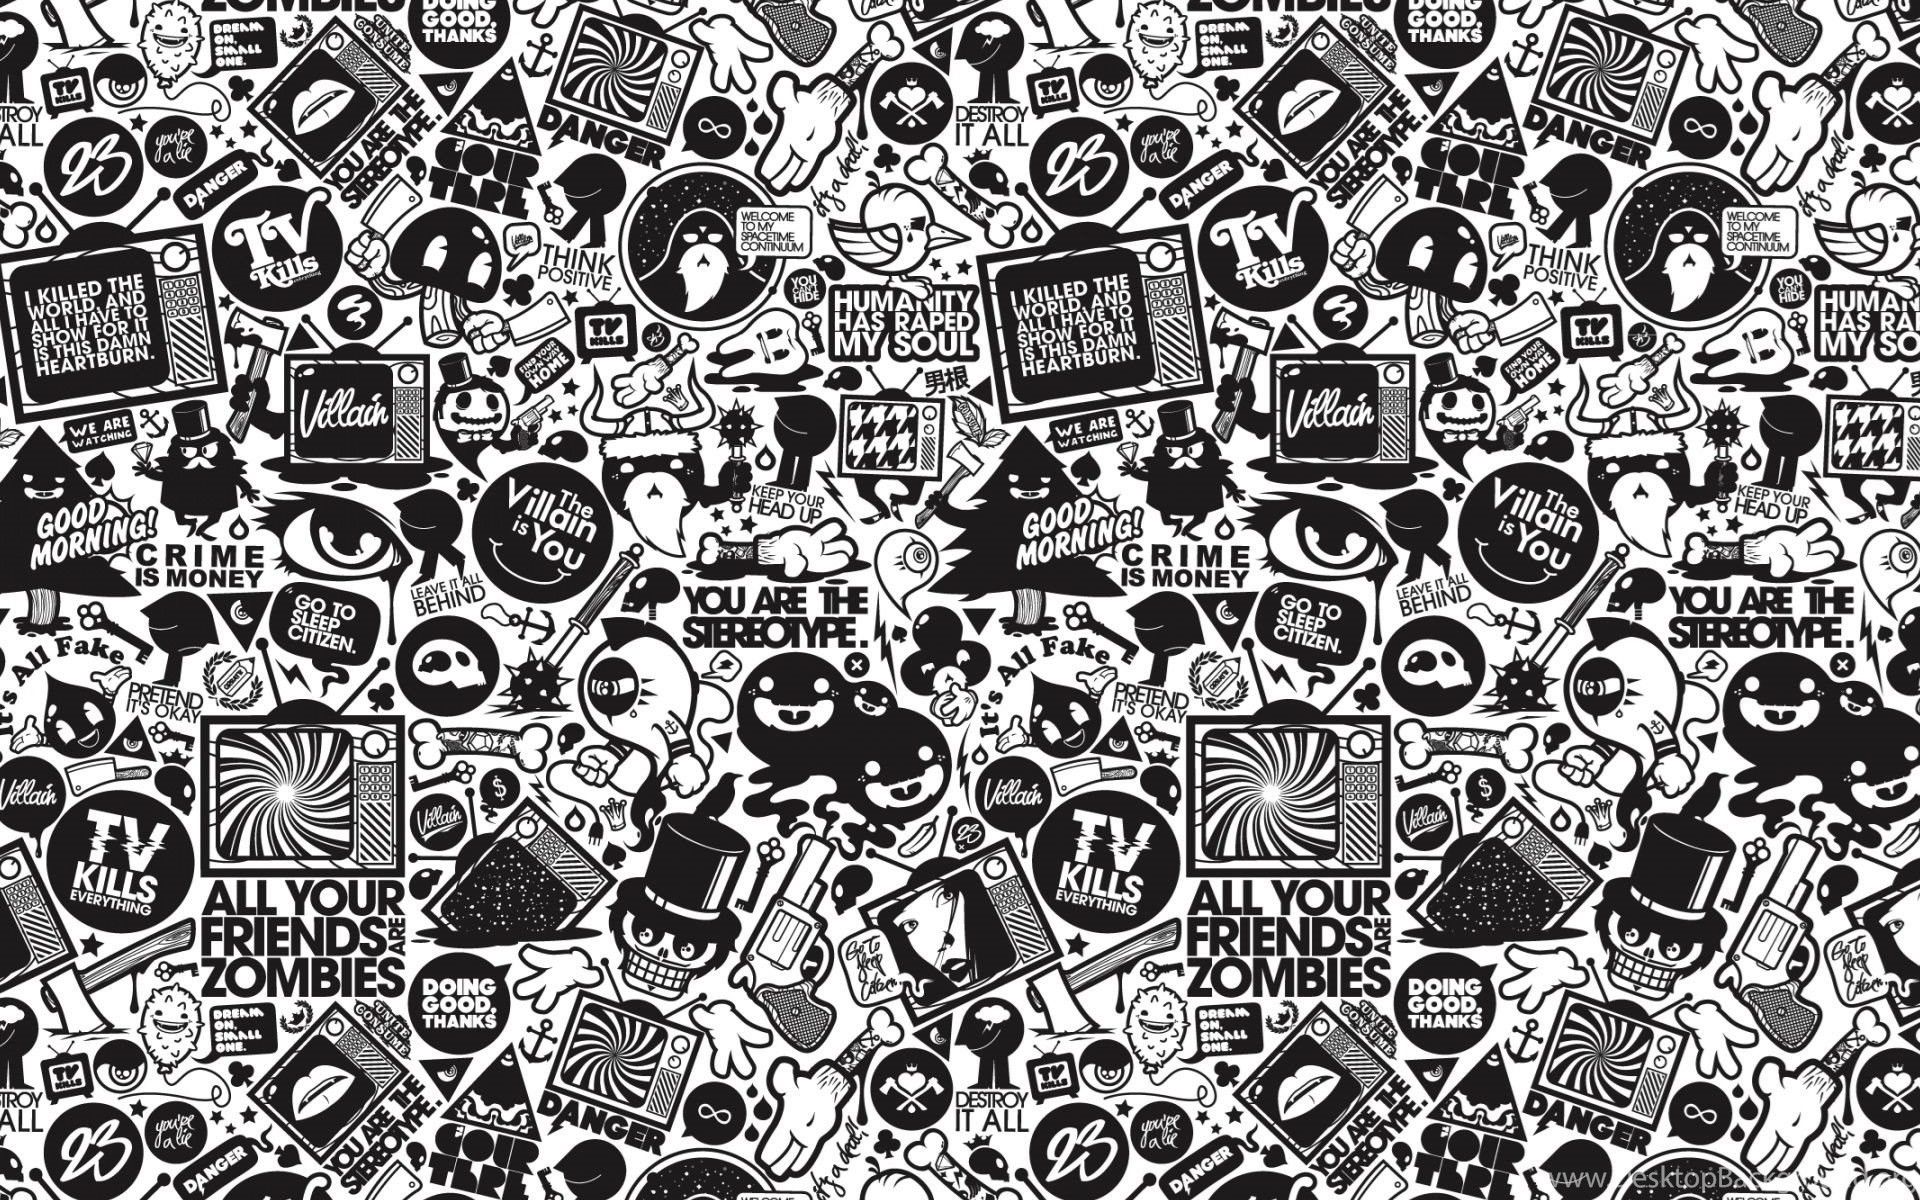 Keith Haring Wallpaper. iPad air wallpaper, Wallpaper, Keith haring